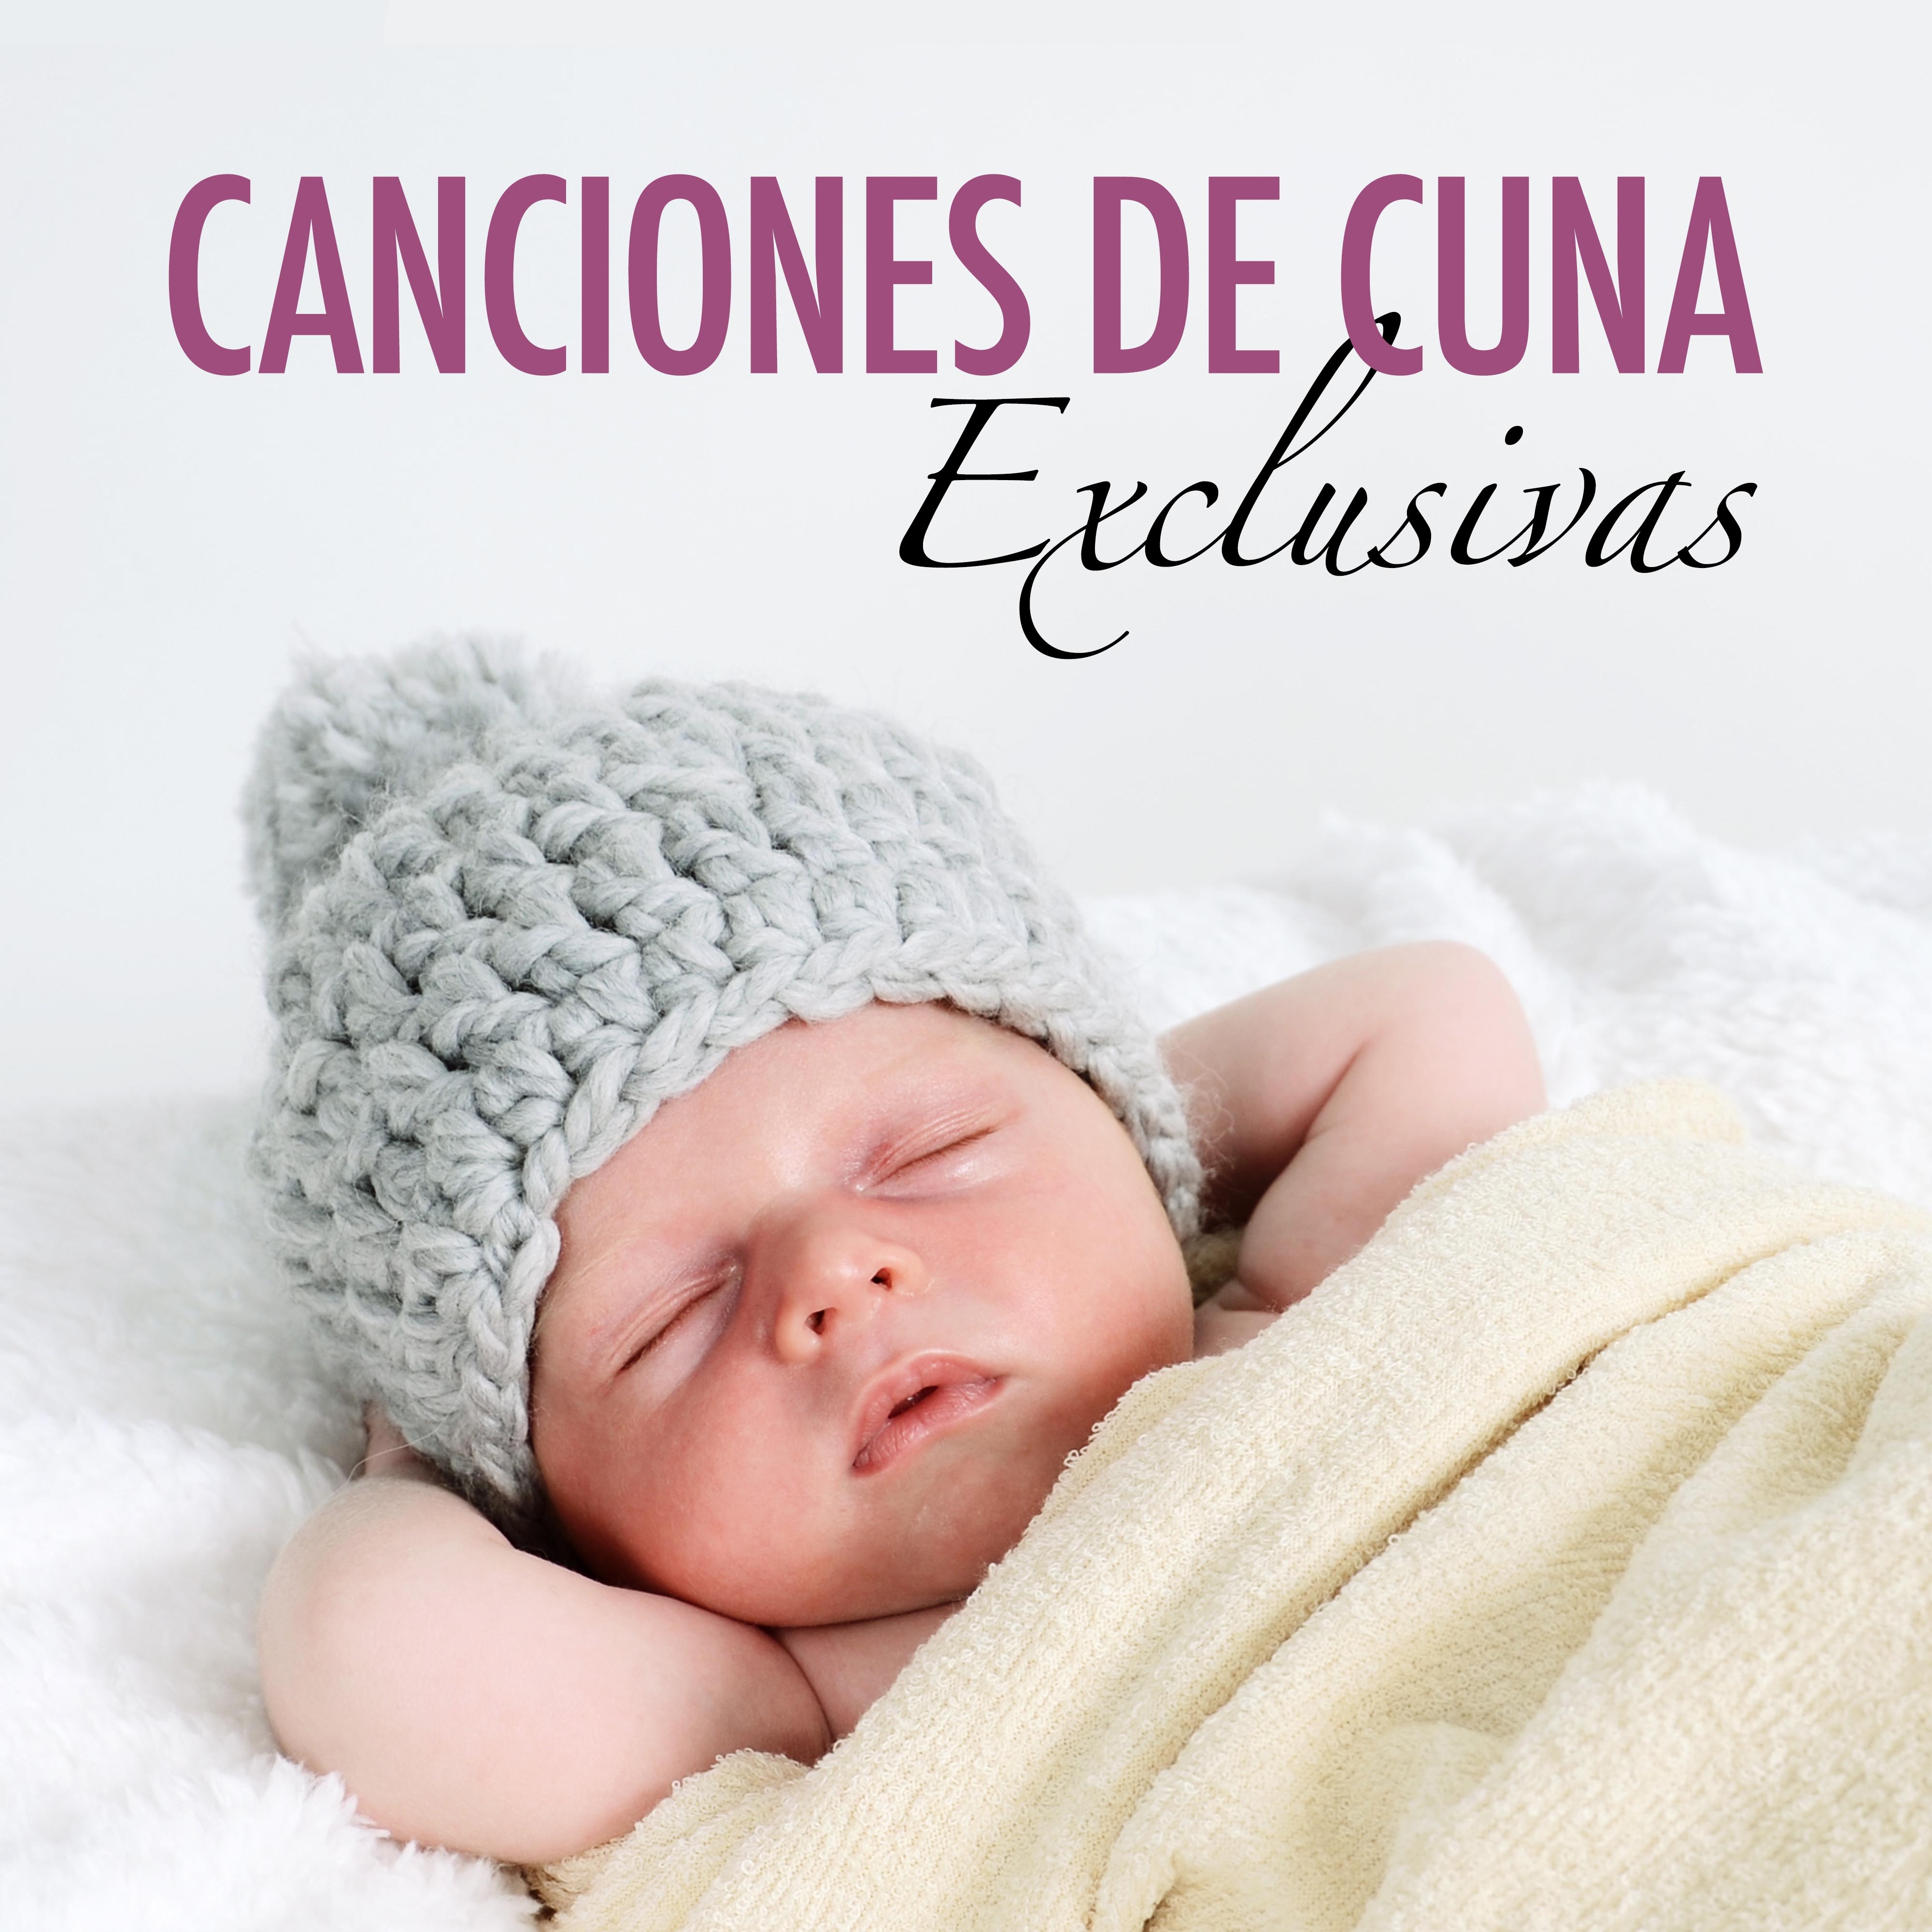 Canciones de Cuna Exclusivas - Música Relajante para Bebés y Niños para Madres Embarazadas y el Embarazo